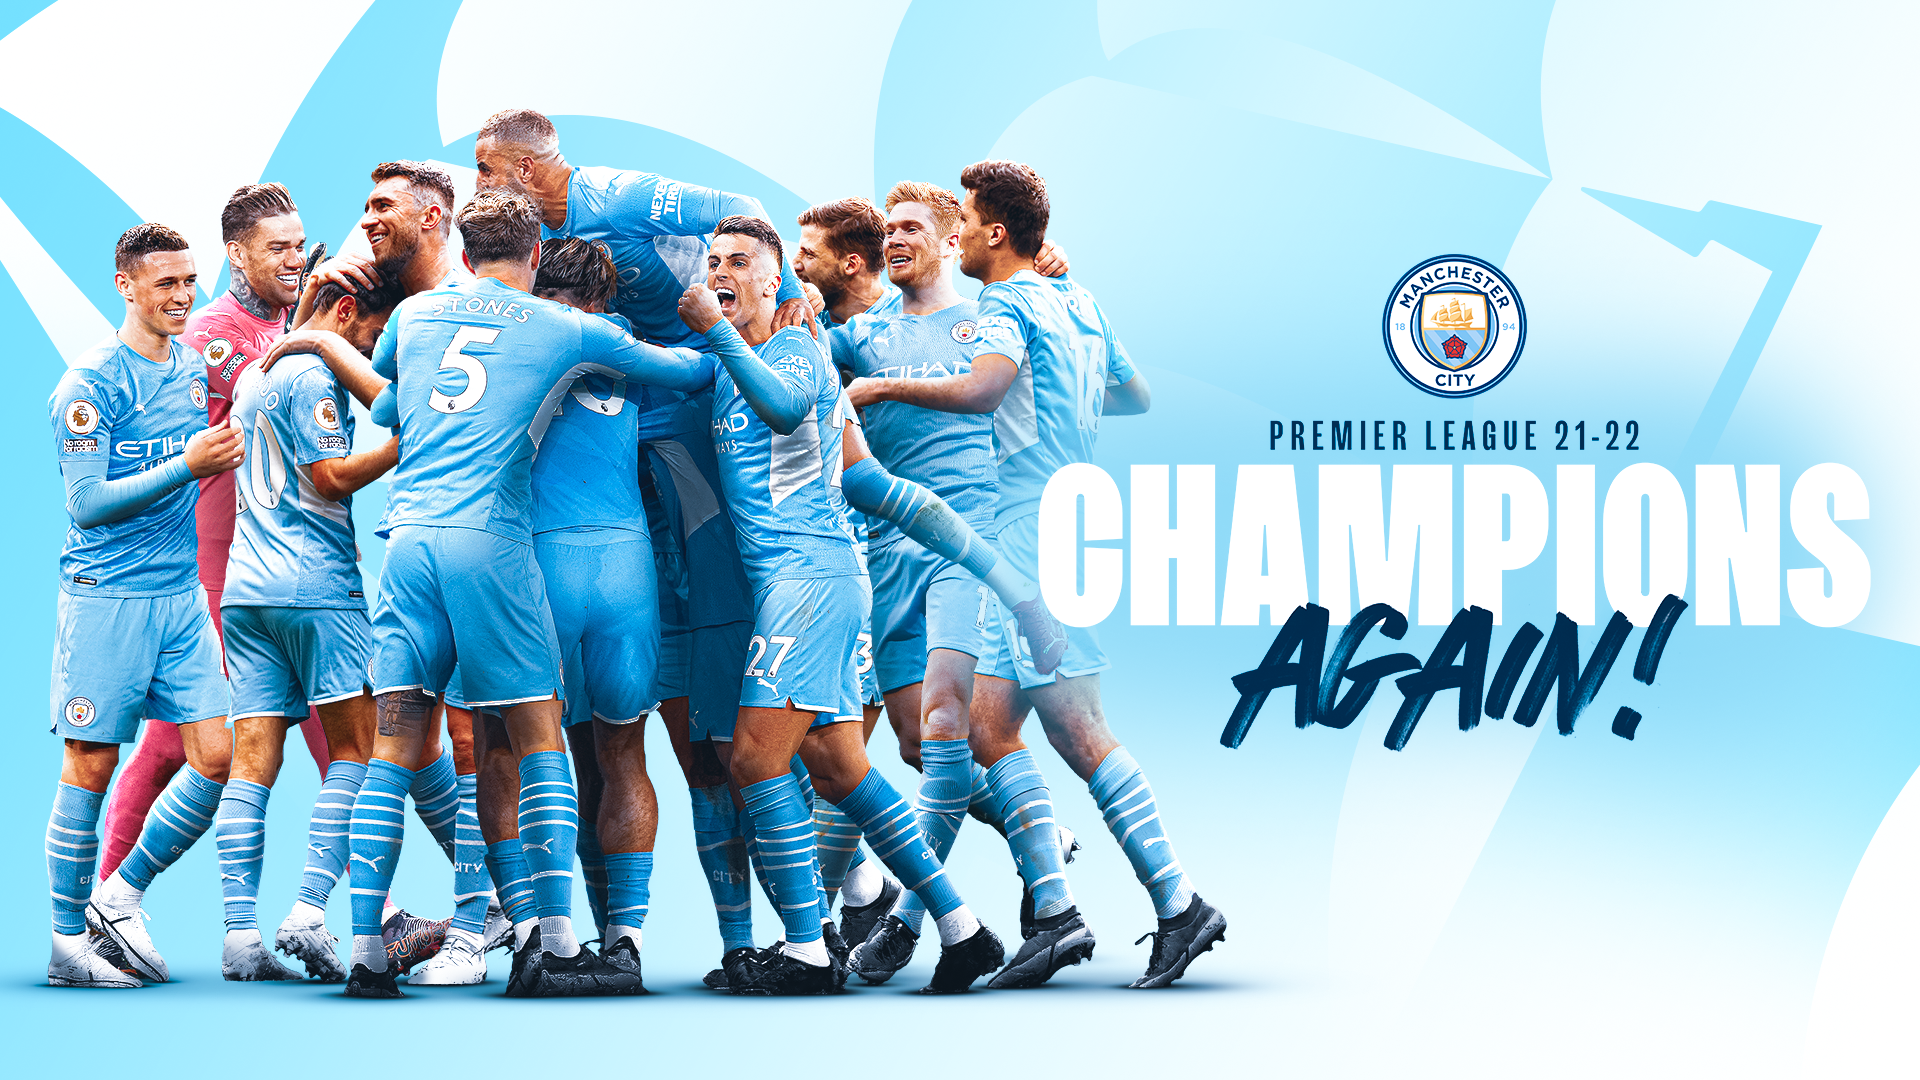 pessimist væv overgive Manchester City crowned 2021/22 Premier League champions